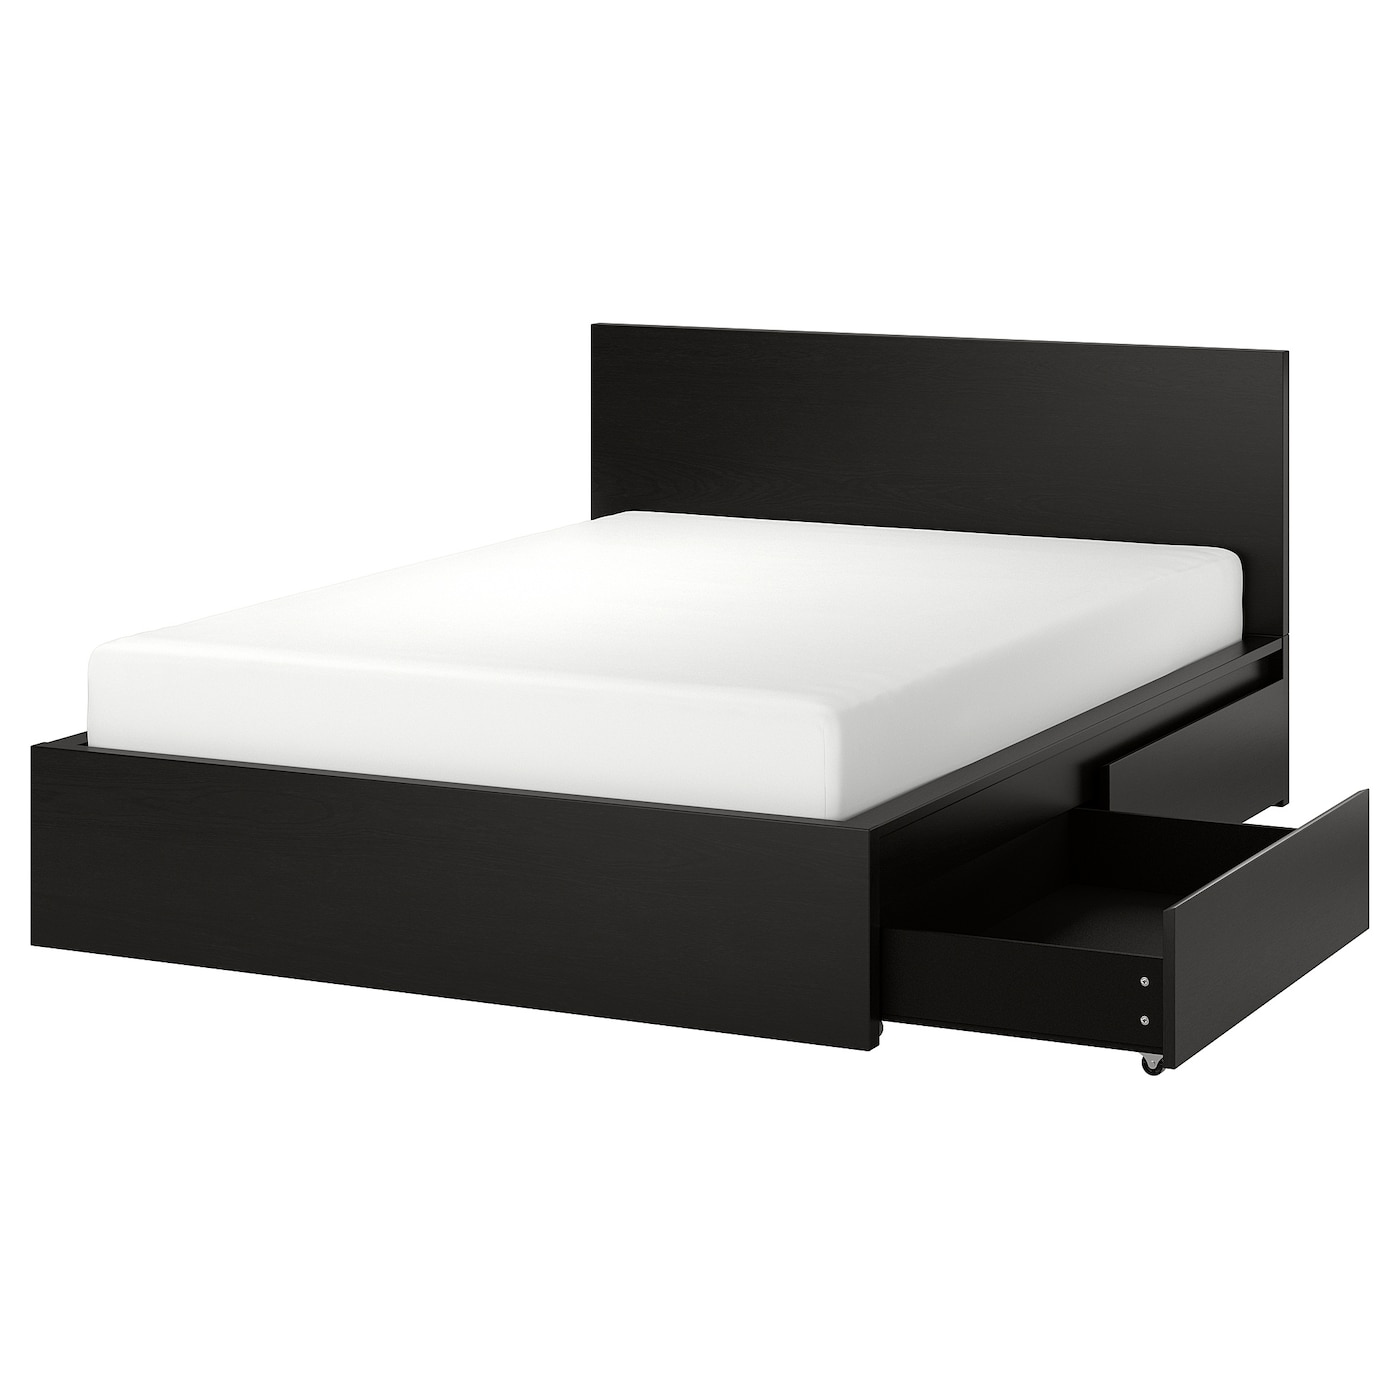 Каркас кровати с 4 ящиками для хранения - IKEA MALM, 200х140 см, черный, МАЛЬМ ИКЕА